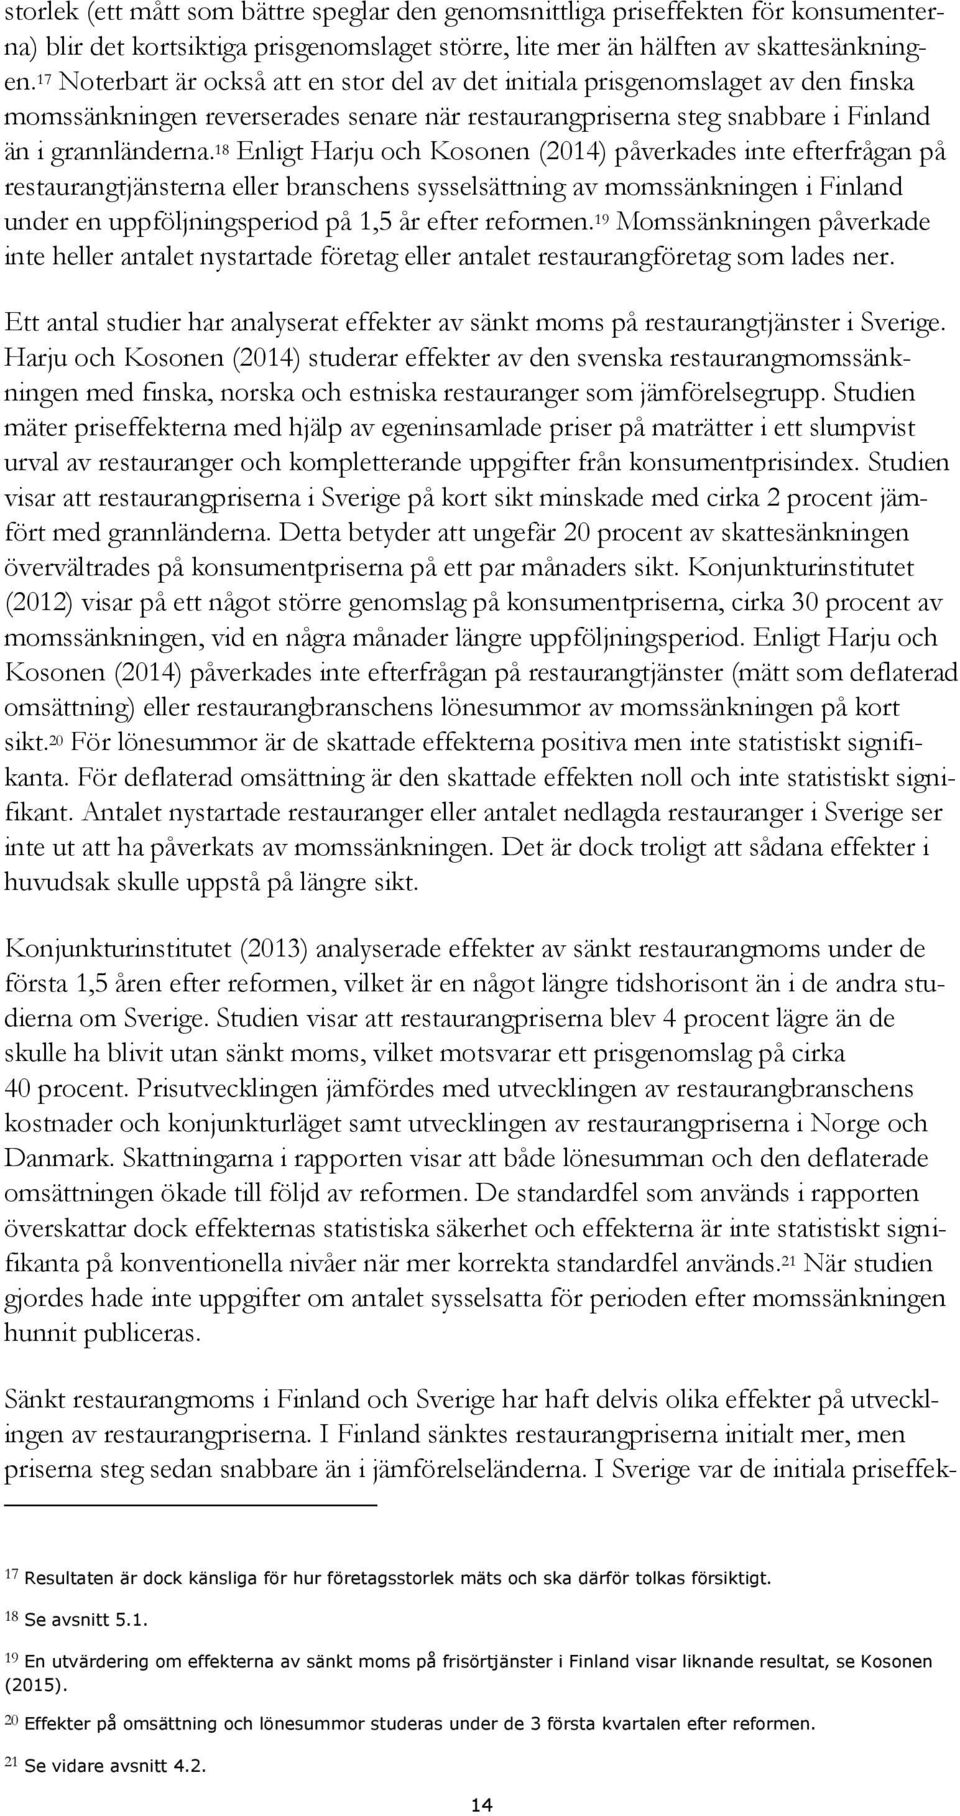 18 Enligt Harju och Kosonen (2014) påverkades inte efterfrågan på restaurangtjänsterna eller branschens sysselsättning av momssänkningen i Finland under en uppföljningsperiod på 1,5 år efter reformen.